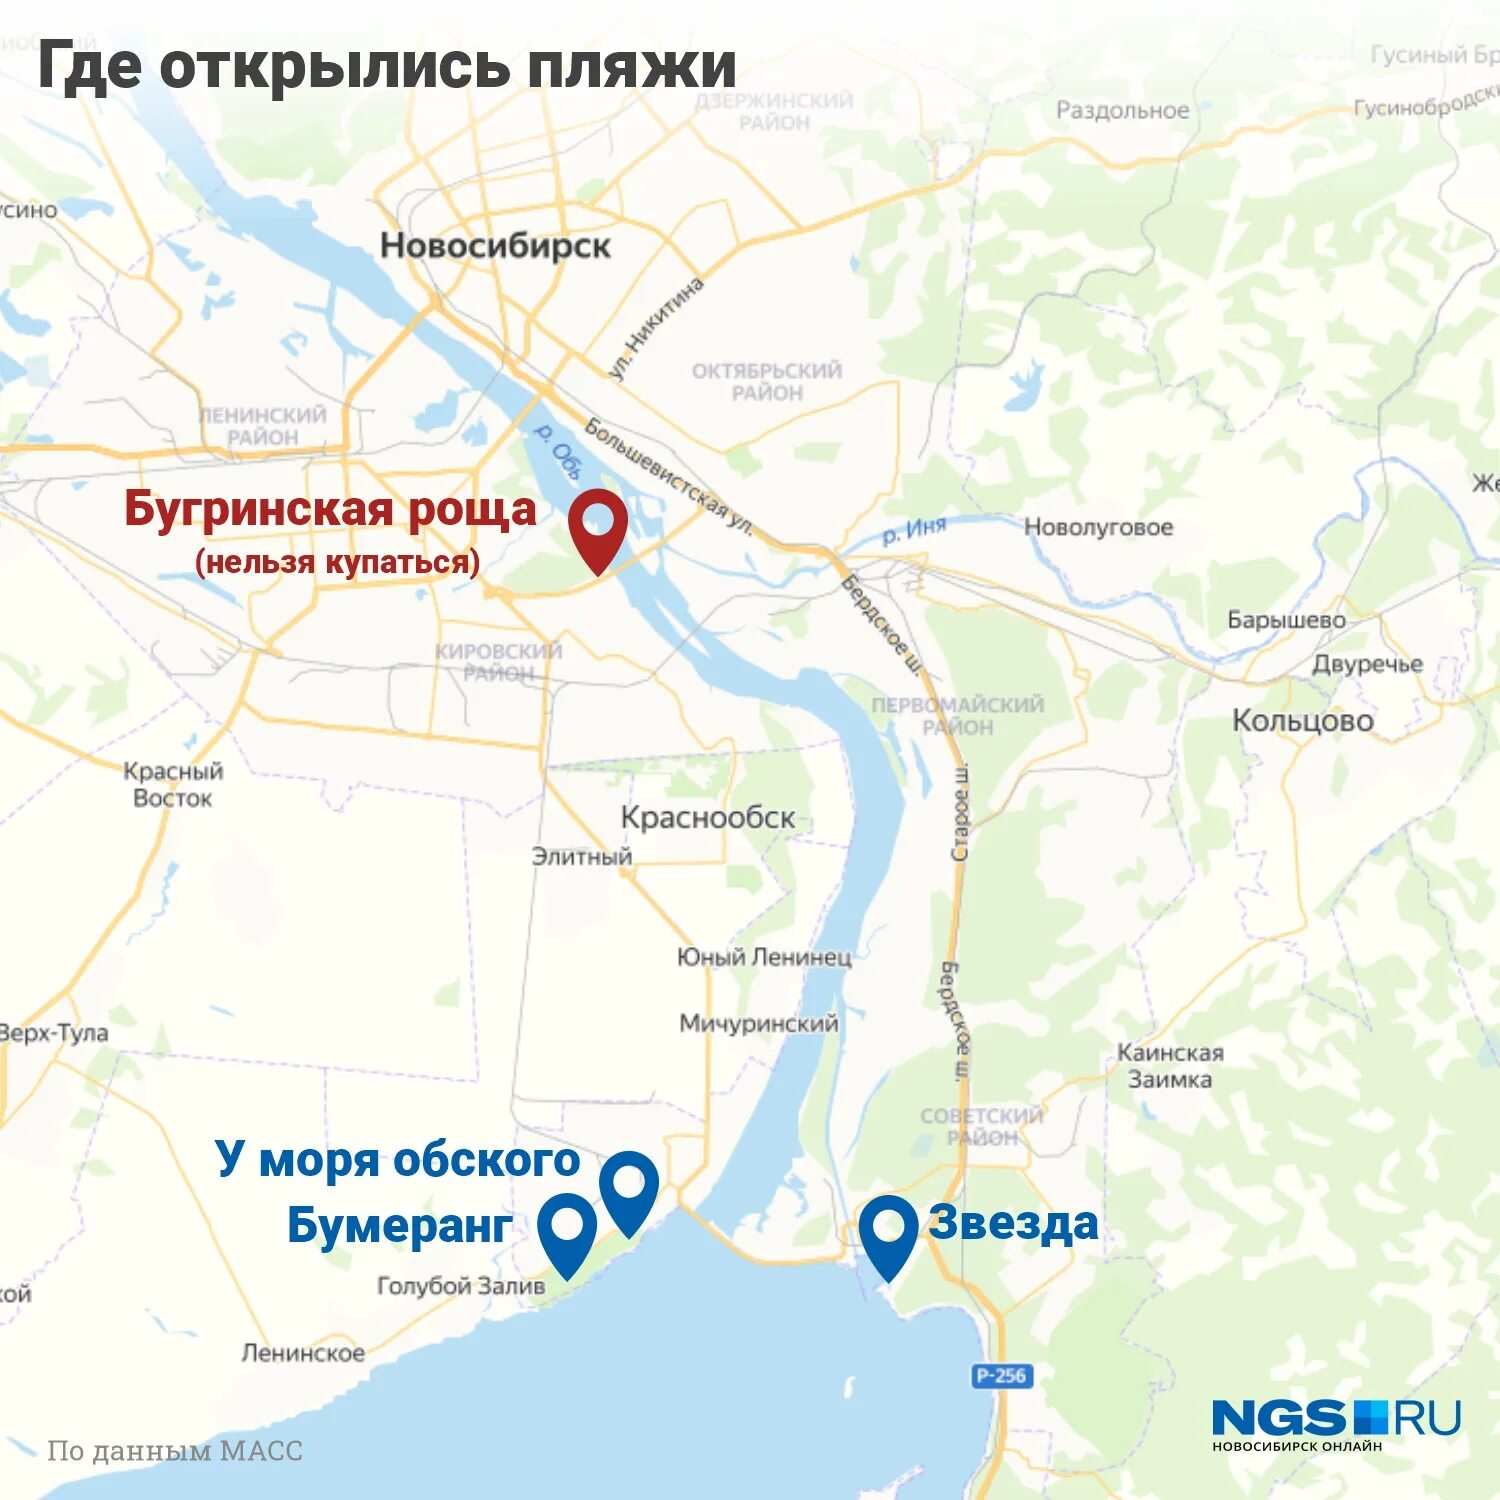 Левый берег правый берег Новосибирск. Левый берег Новосибирск карта. Где Новосибирск. Новосибирск на карте. Районы на правом берегу новосибирска